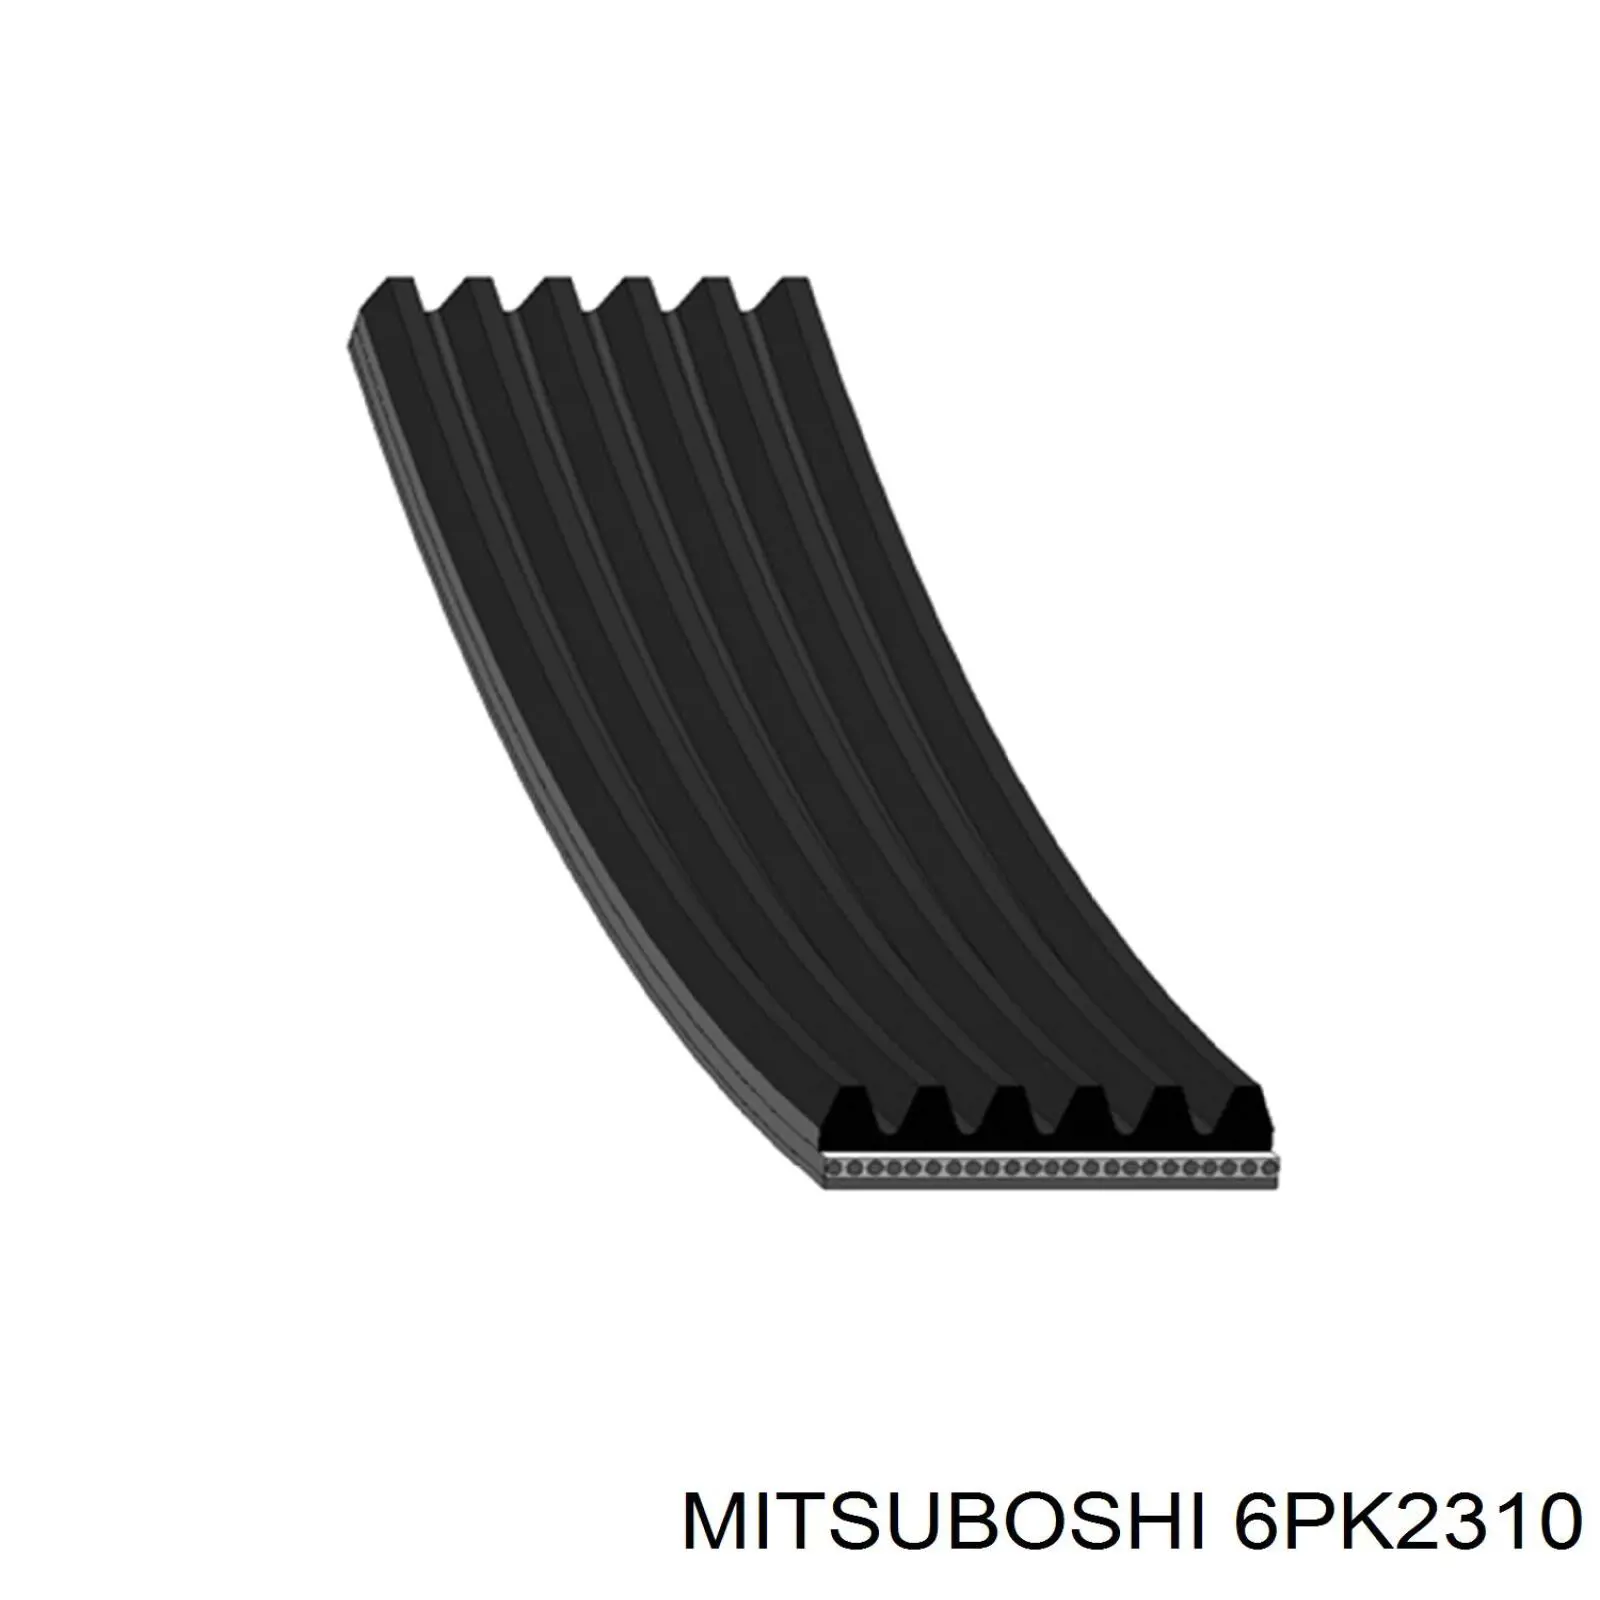 6PK2310 Mitsuboshi correia dos conjuntos de transmissão